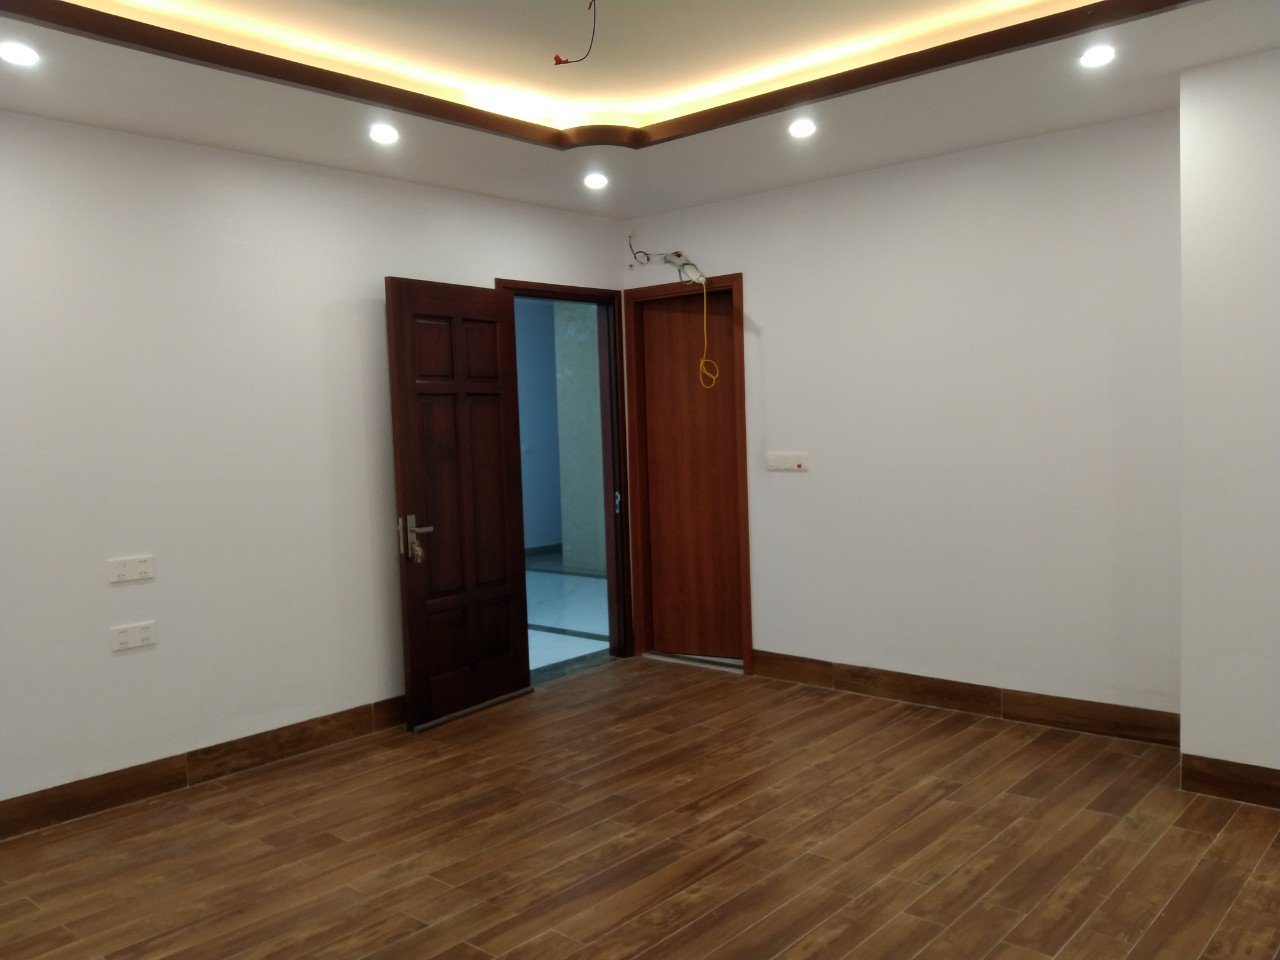 Cho thuê nhà, văn phòng Vĩnh Yên – Vĩnh Phúc 35